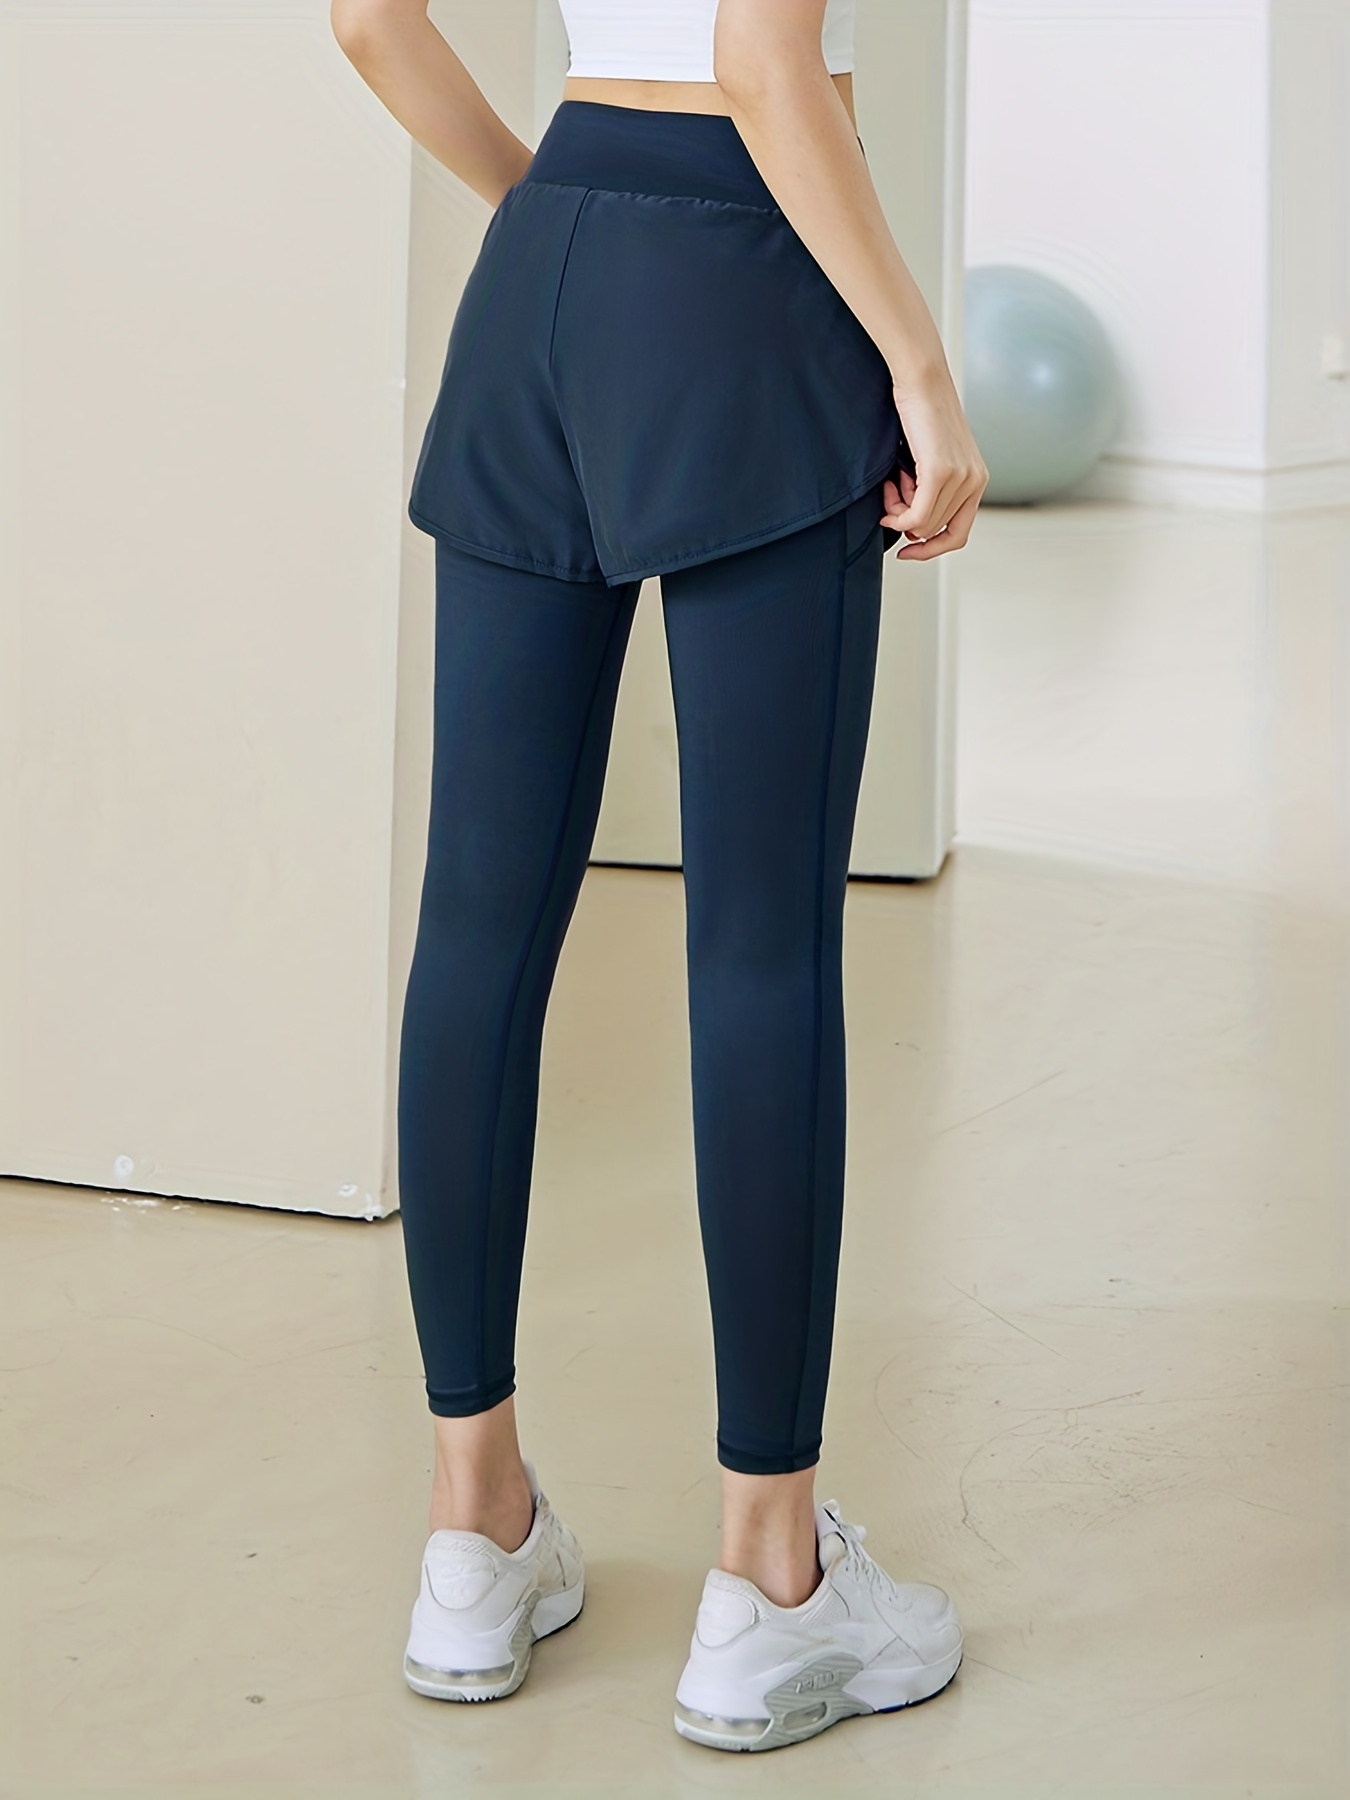 Sheer Yoga Pants for Women Women's Pants Control Athletic Pants Waist  Leggings Tummy High Pants Leggings Yoga for : : Clothing, Shoes 